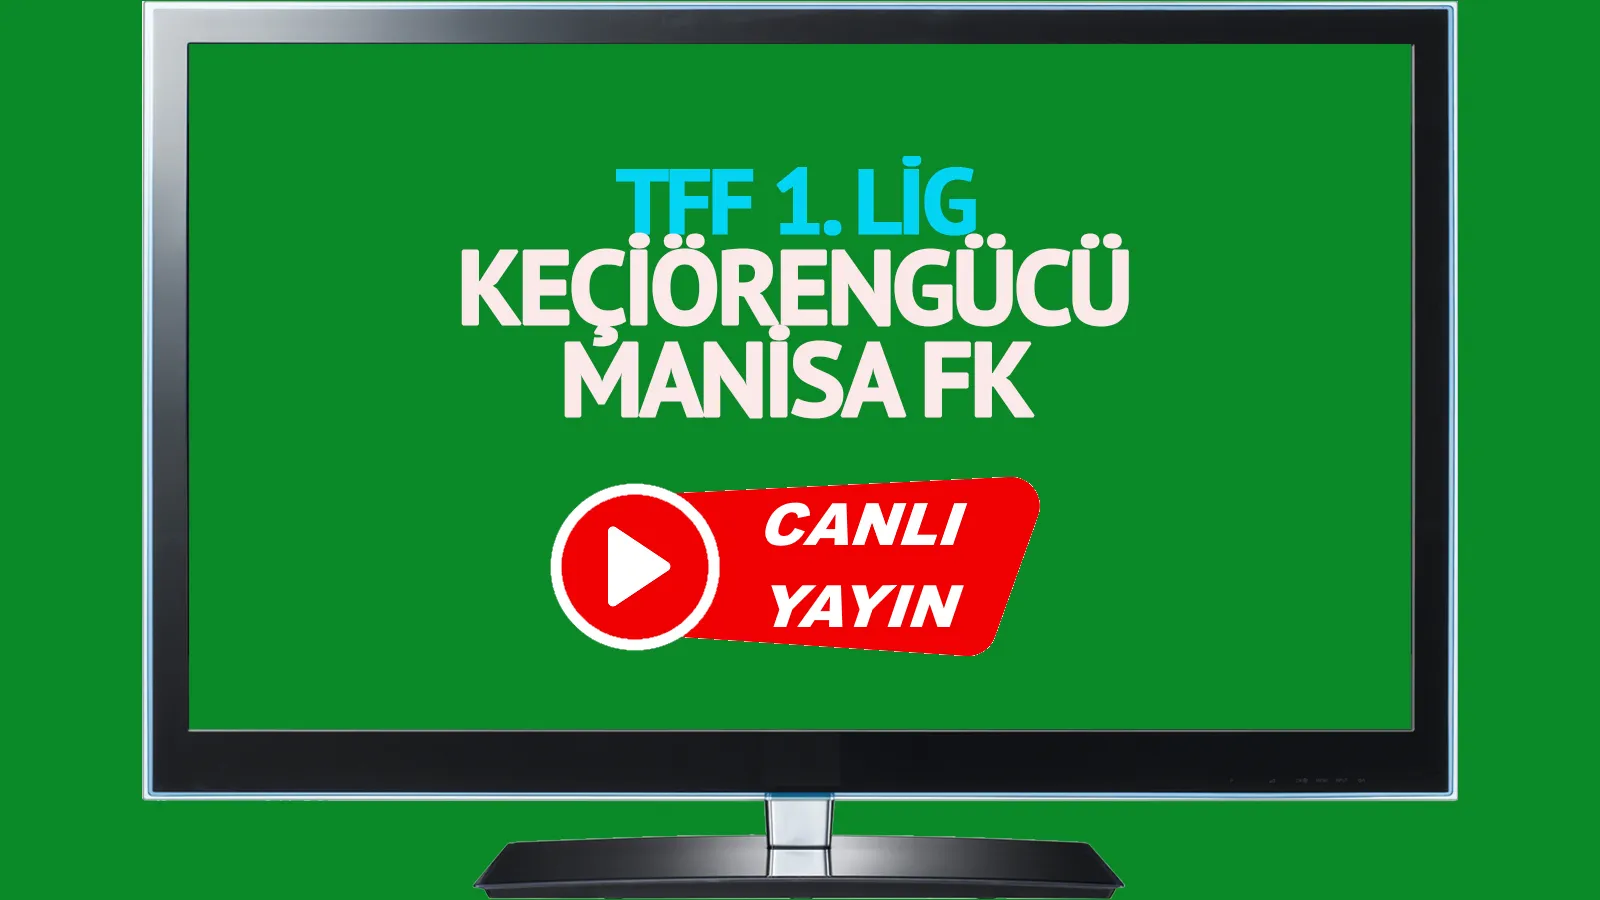  Keçiörengücü Manisa FK canlı maç izle CANLI İZLE!